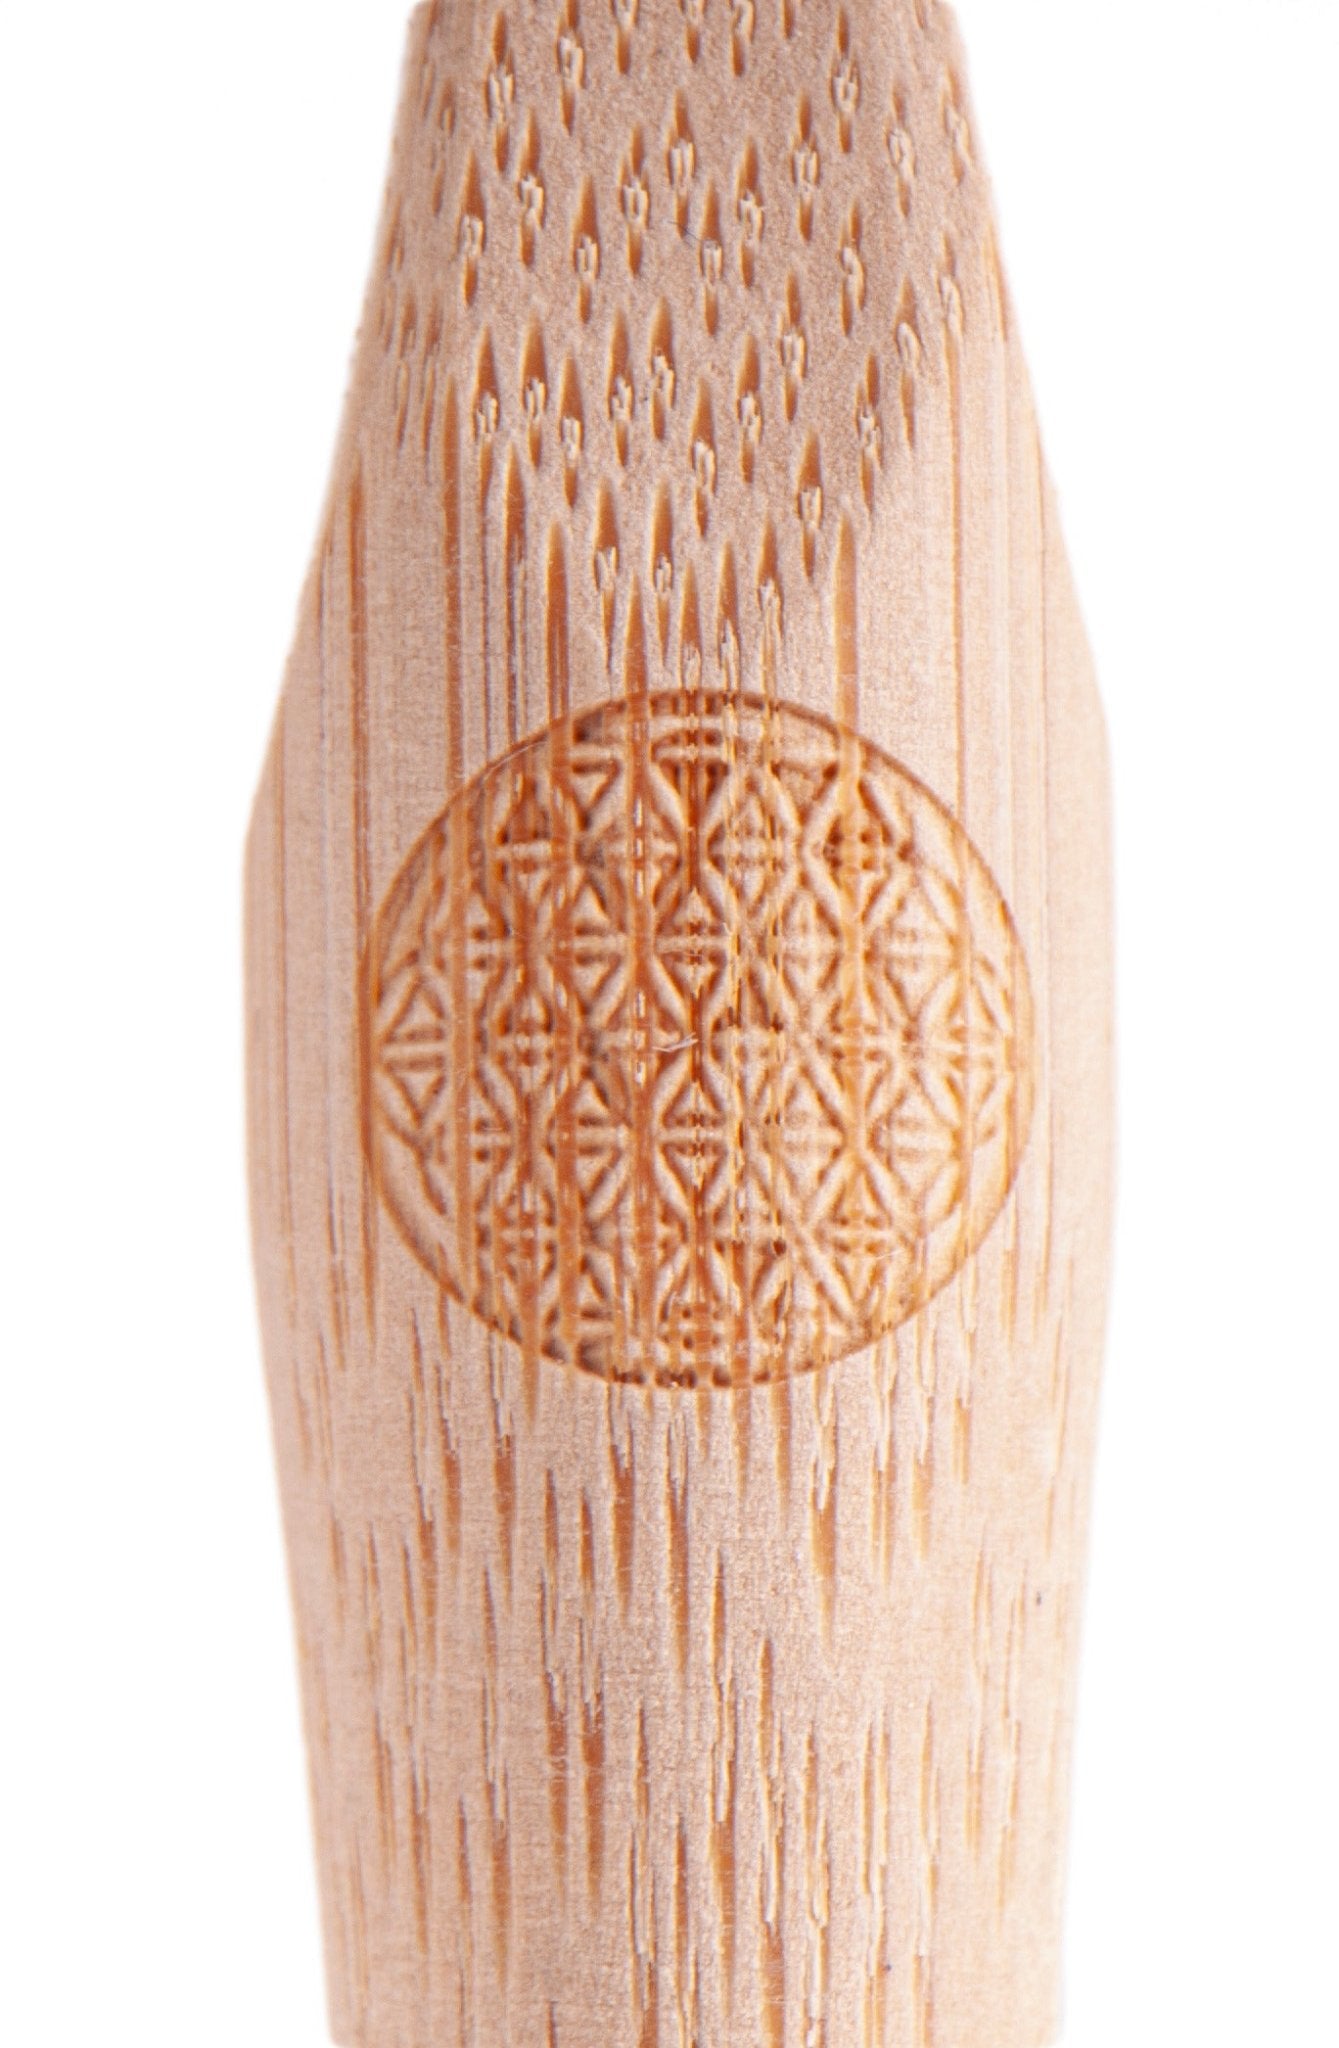 Bambus Zahnbürste mit Bambuskohle Borsten - Das Raeucherwerk